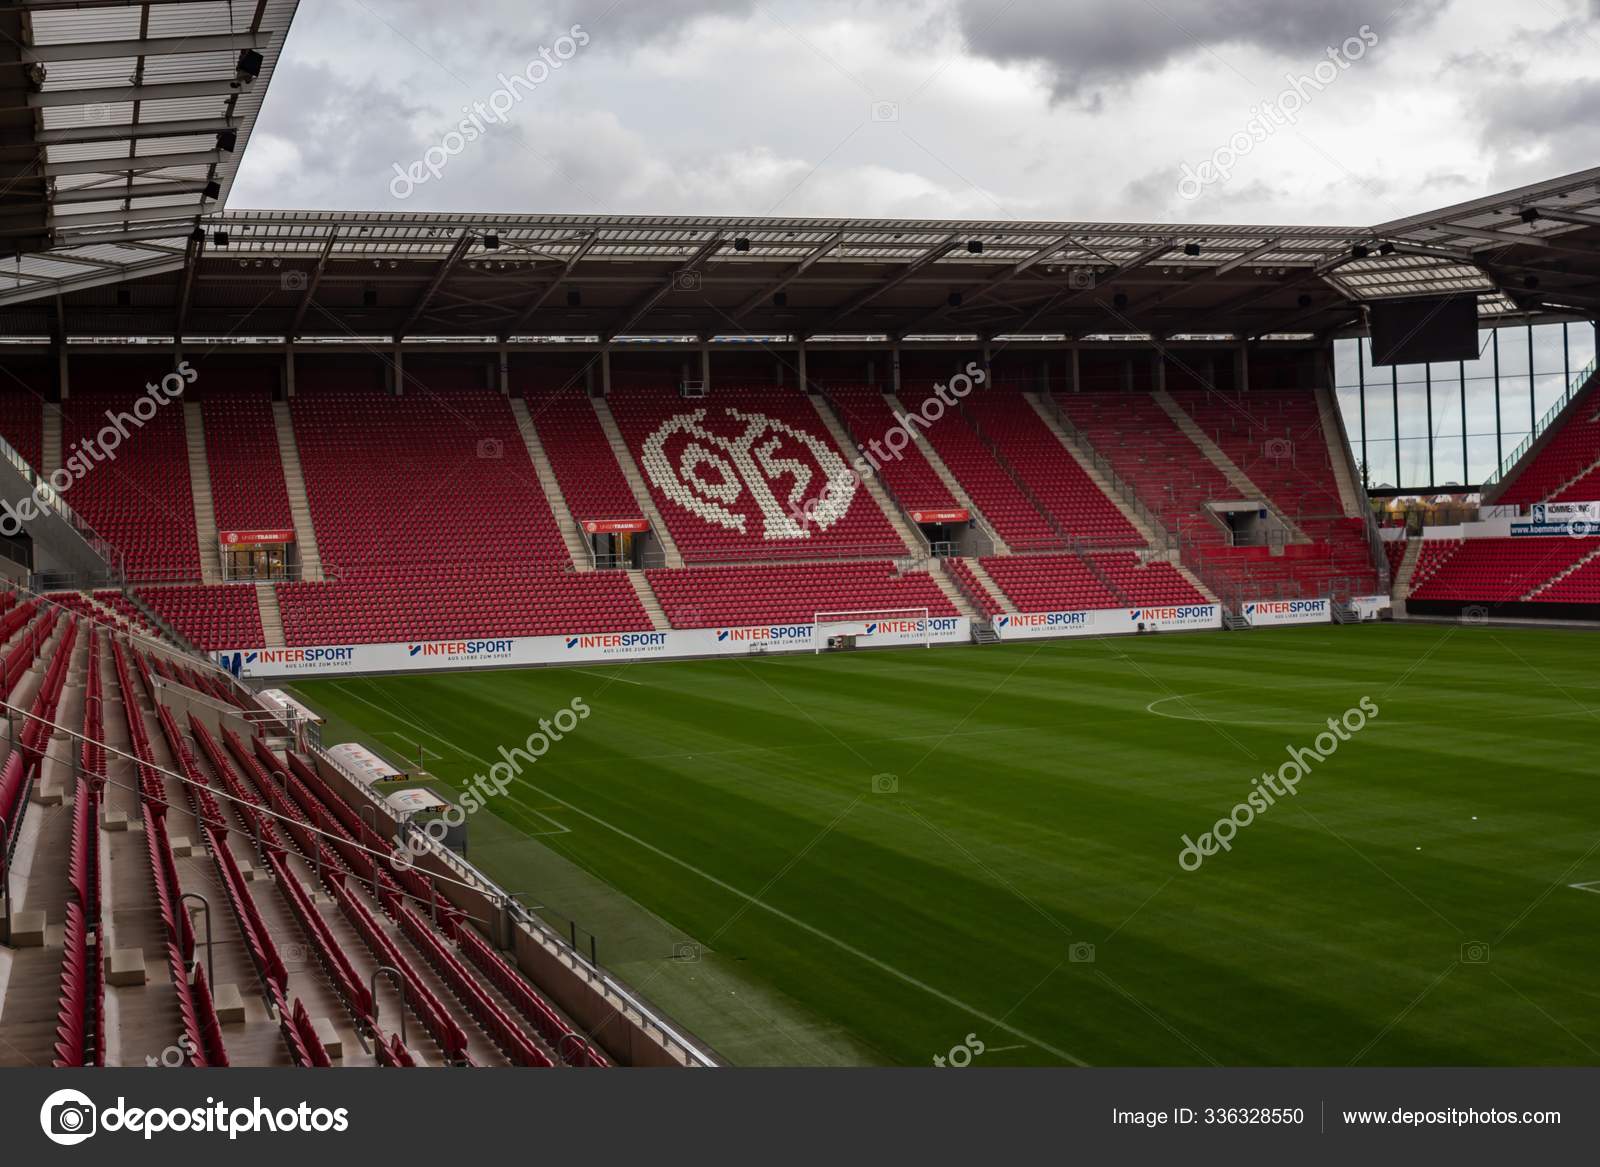 Mainz 05 Ishallens inre – Redaktionell stockfoto © Wirestock #336328550